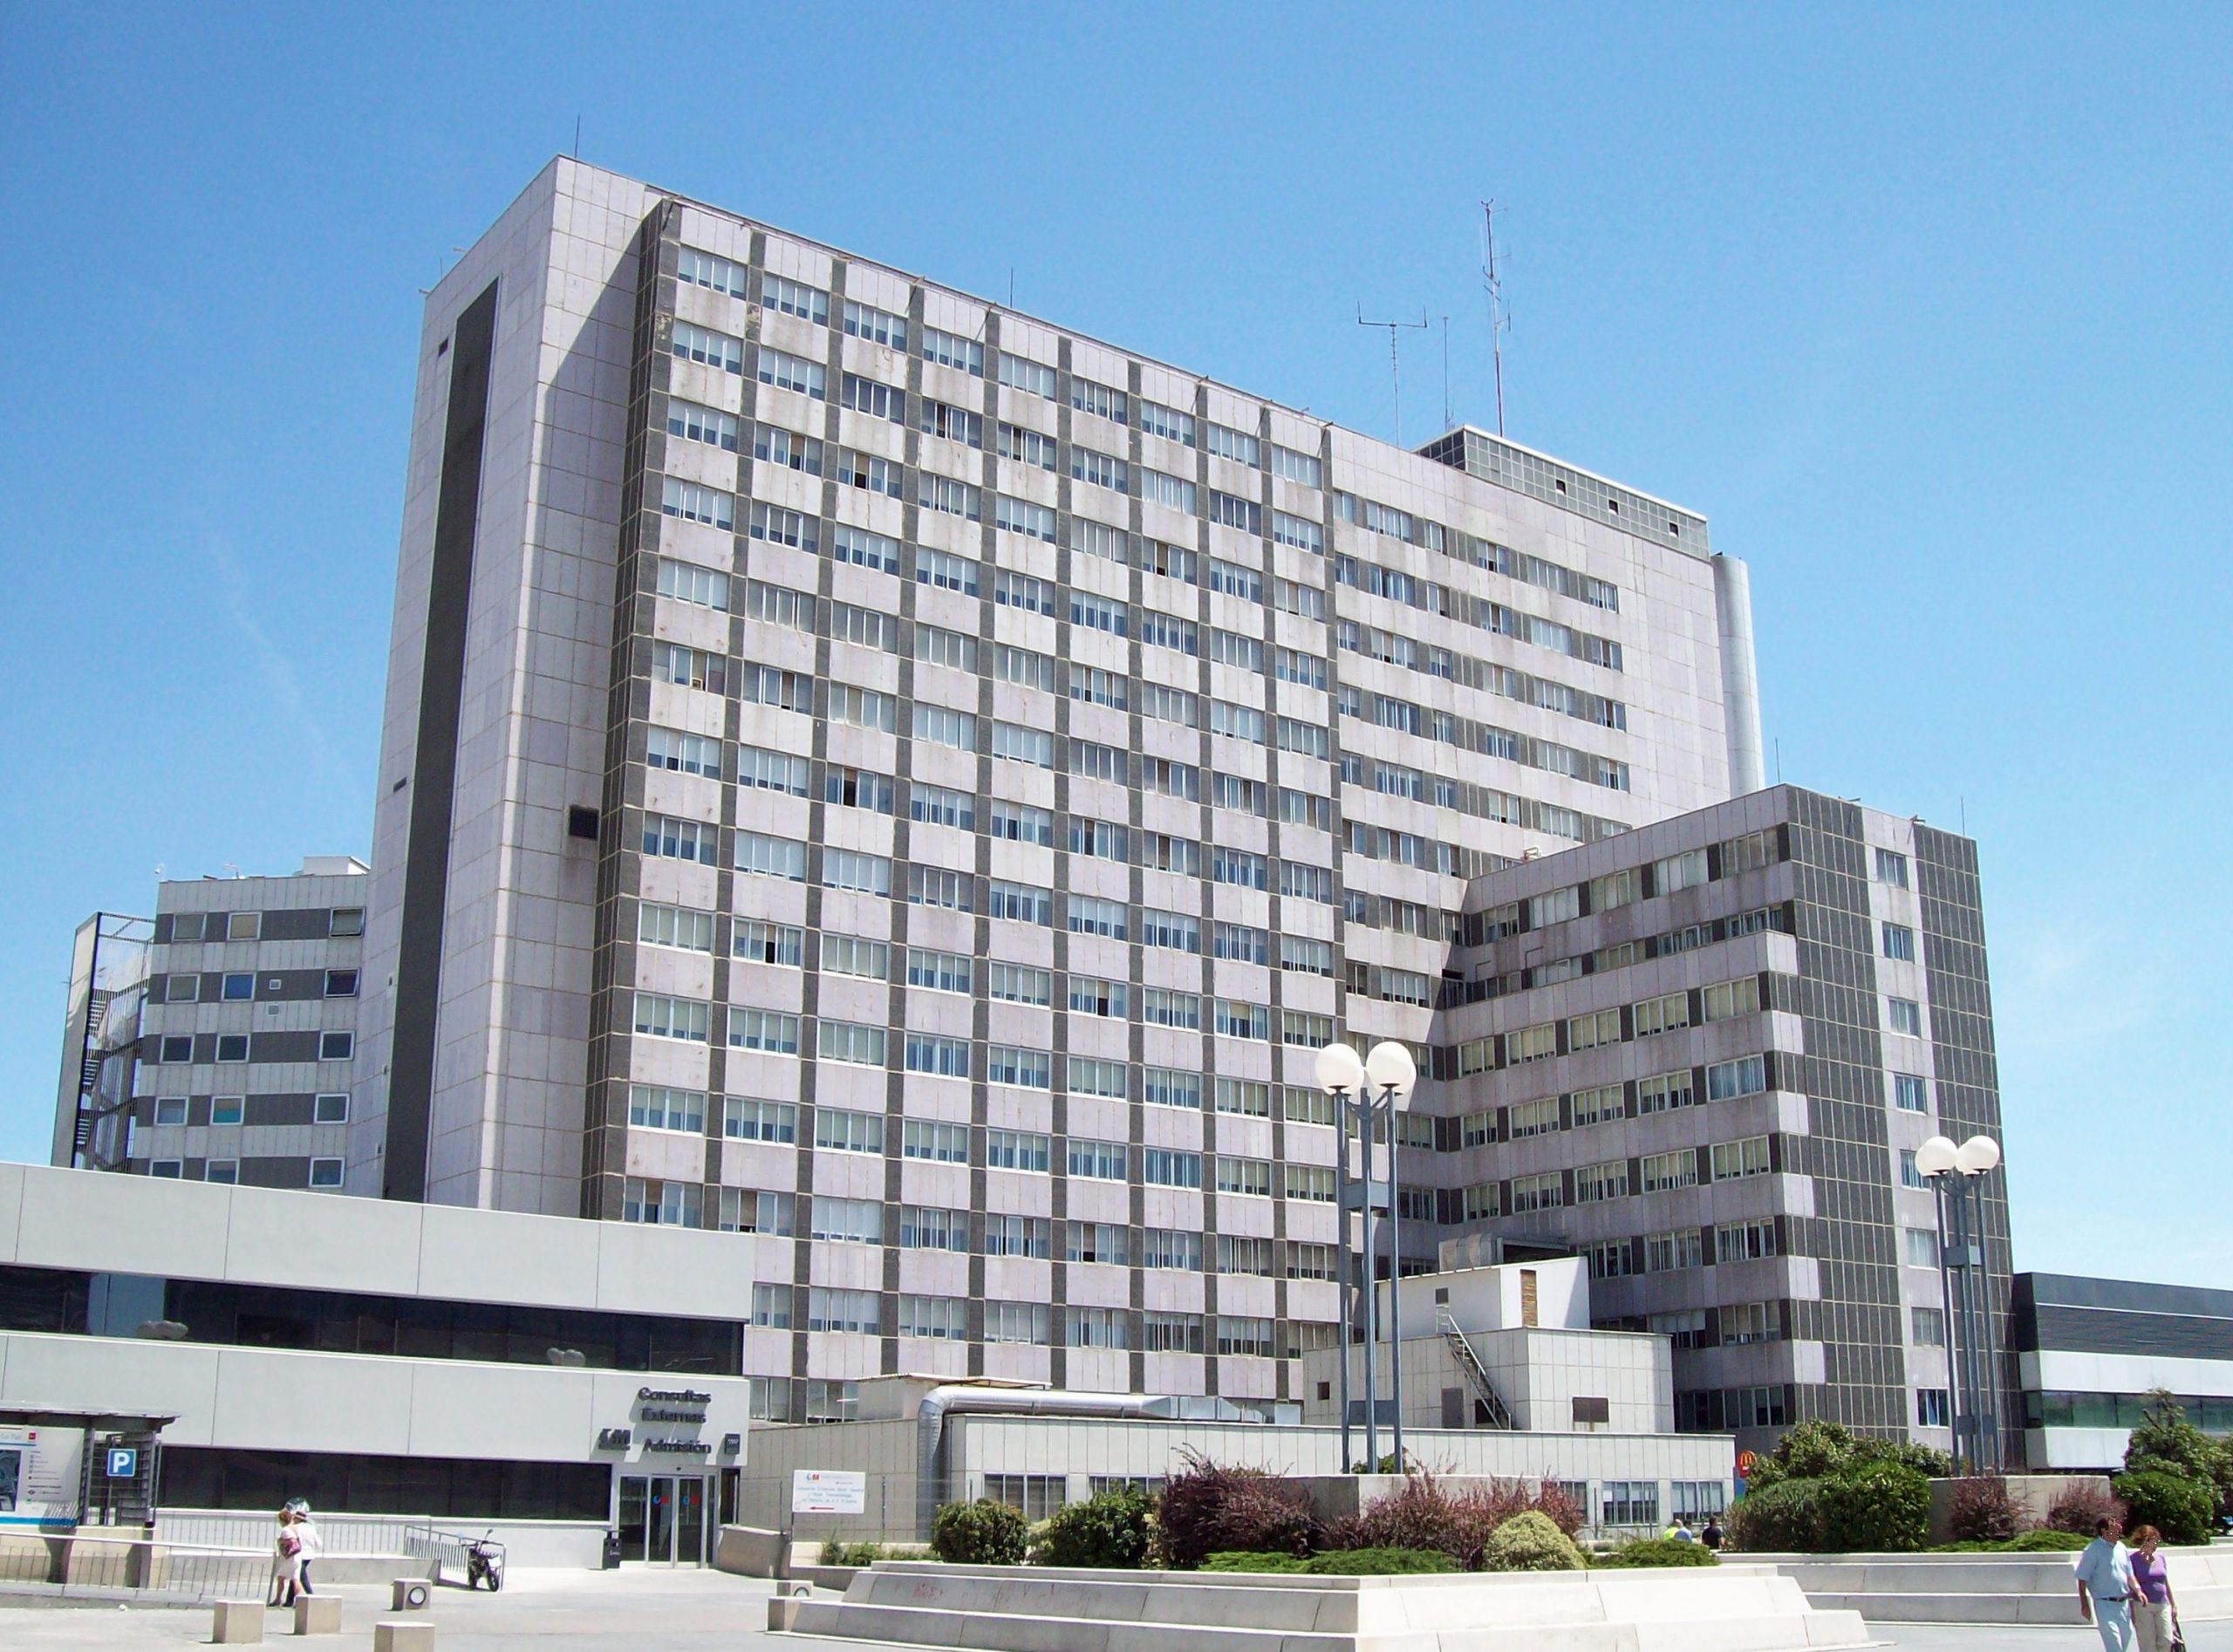 La Paz University Hospital, In Fuencarral El Pardo District In Madrid (spain).